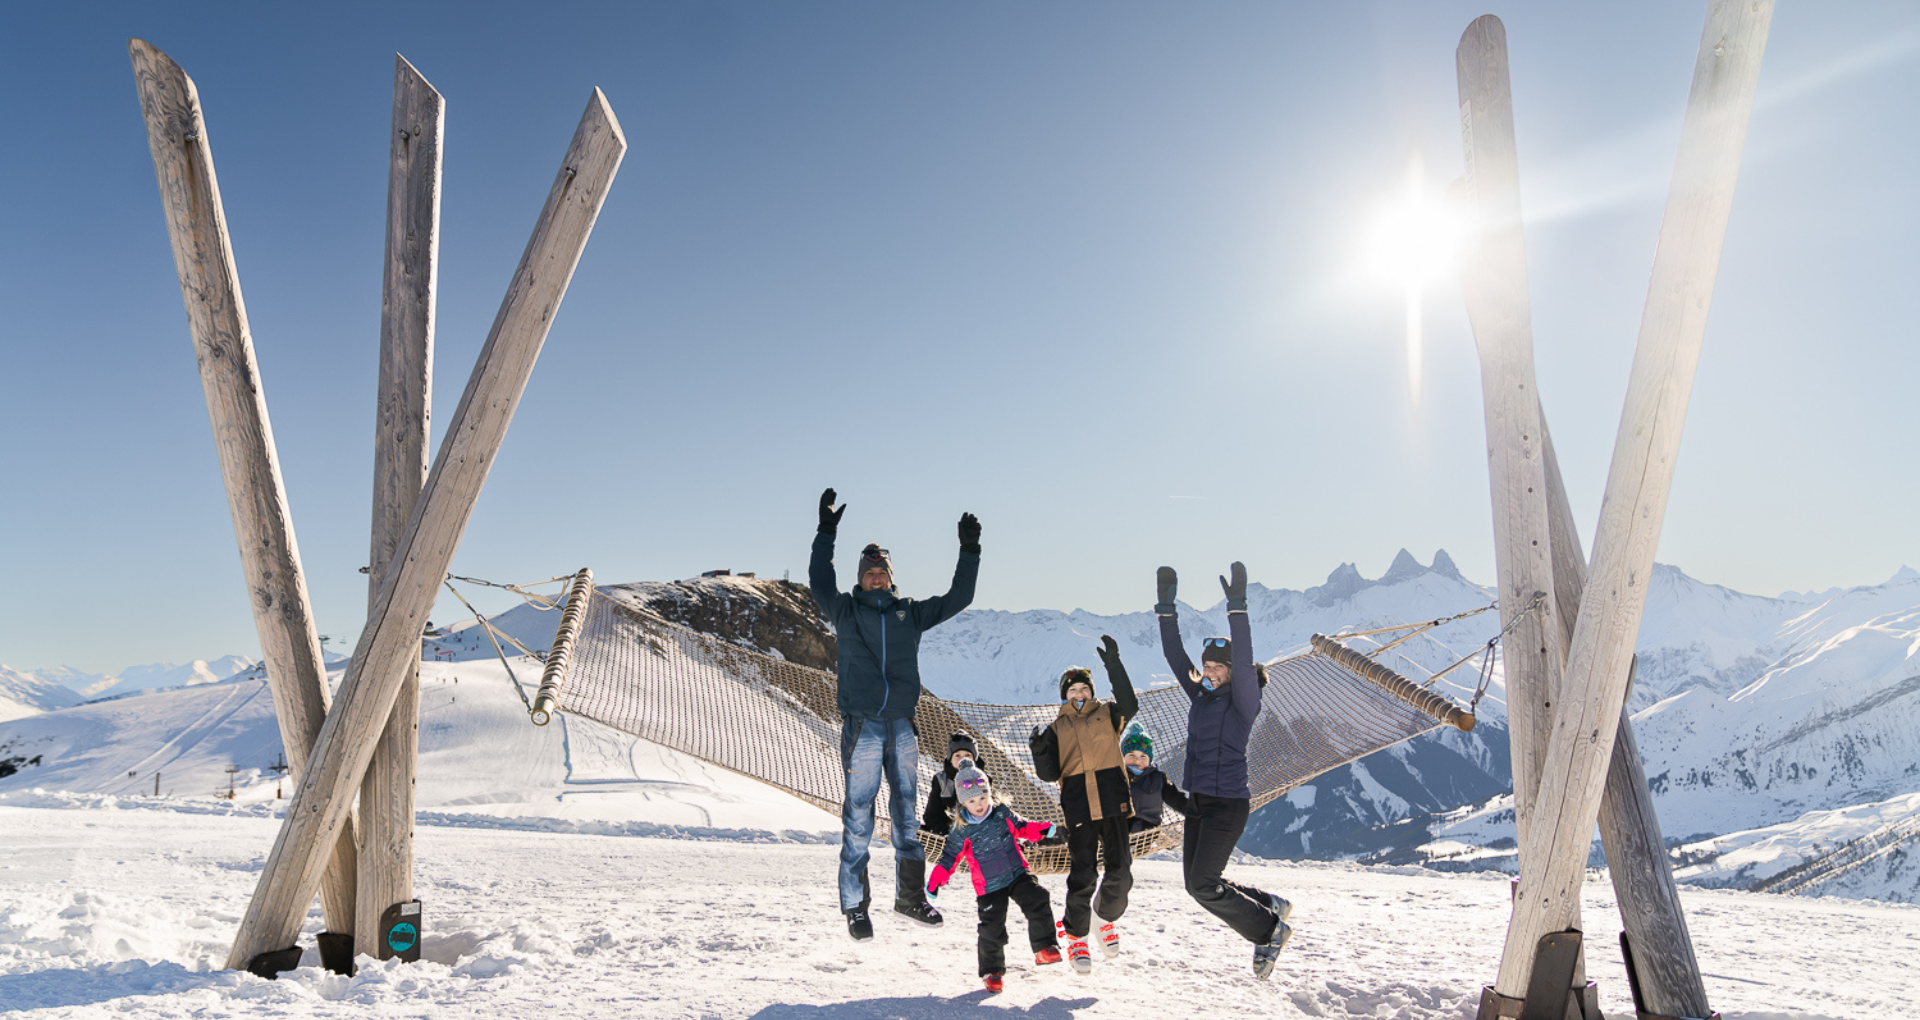 Une famille au ski sautant dans les airs devant le hamac des Sybelles